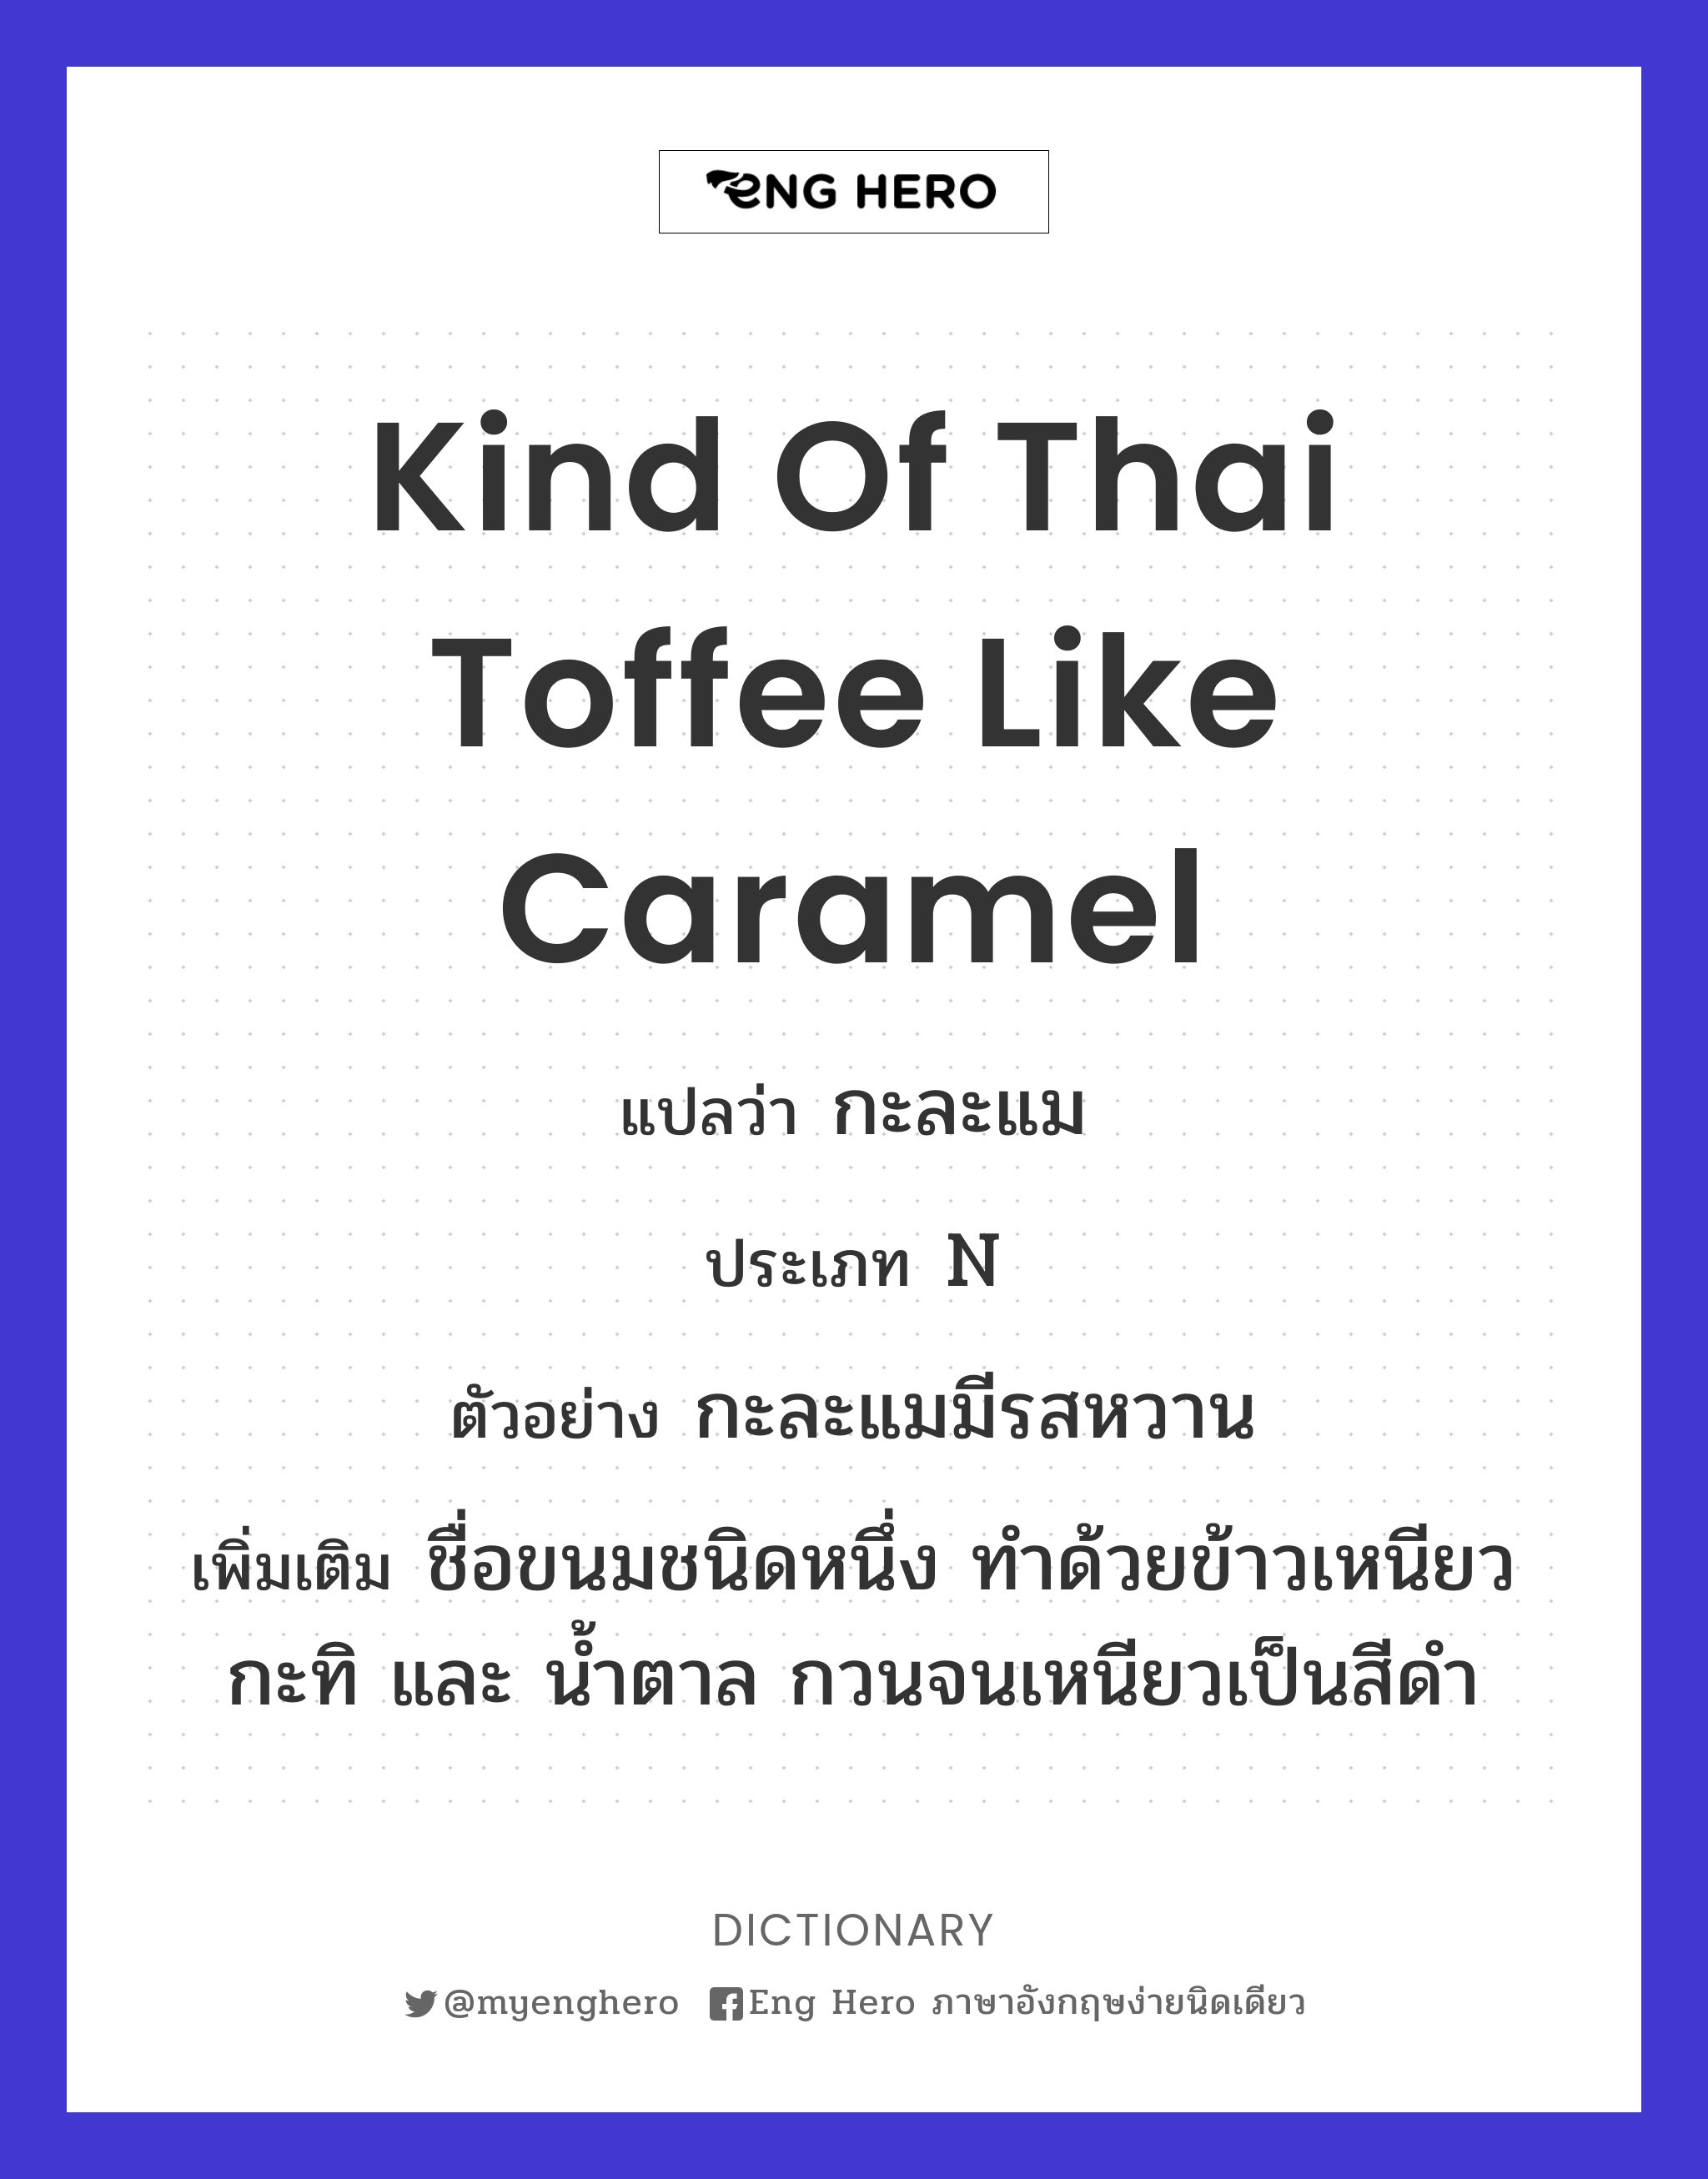 kind of Thai toffee like caramel